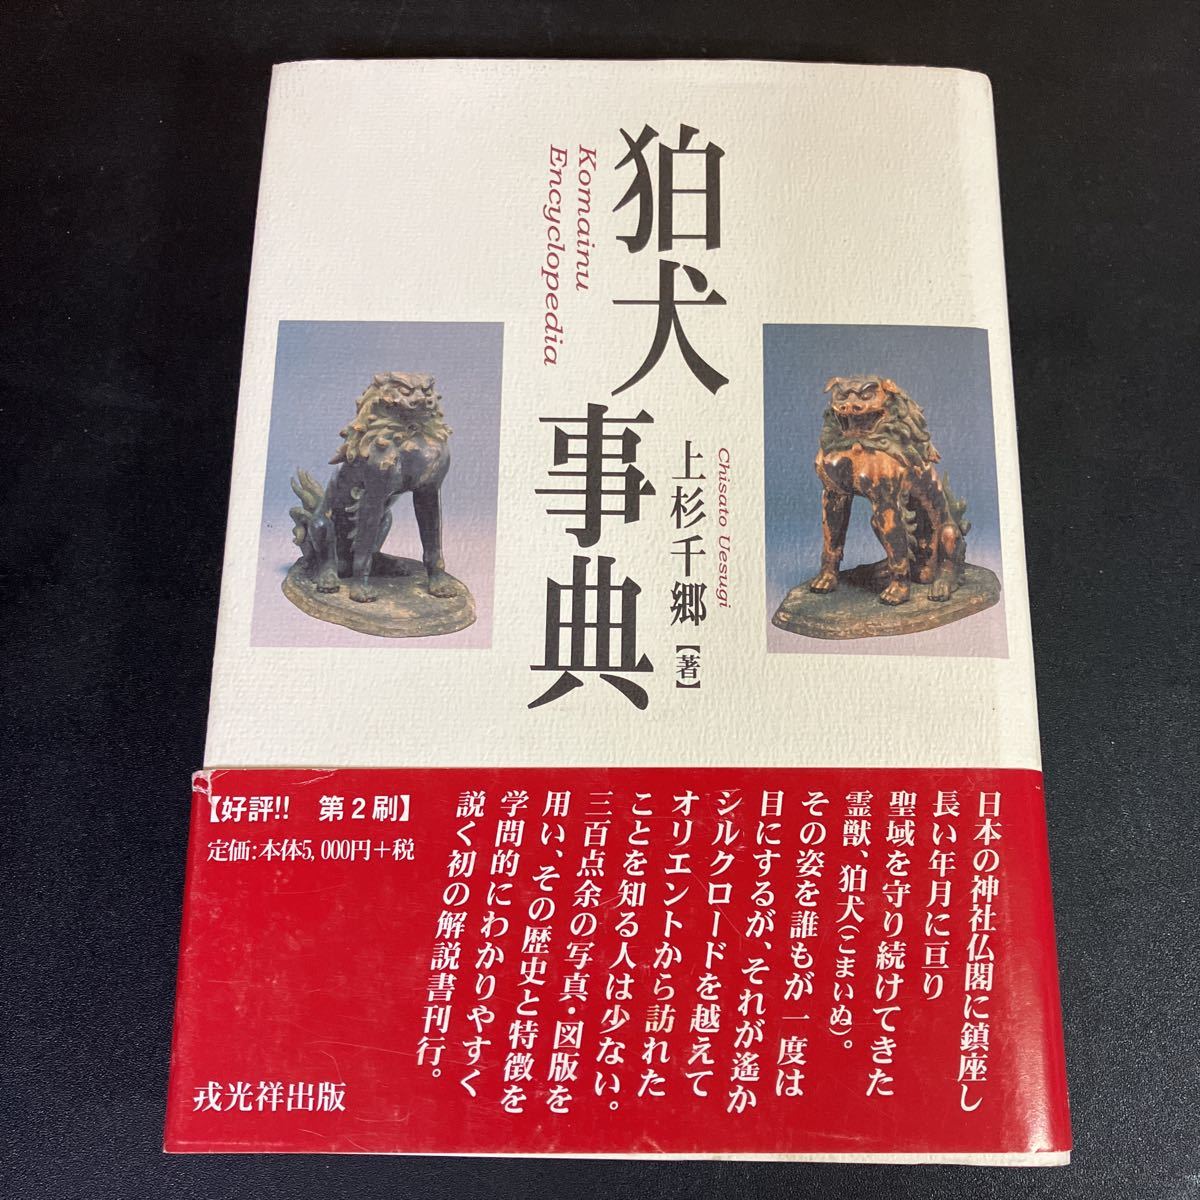 新作ウエア 23-8-23『 狛犬事典 』 上杉千郷 戎光祥出版 2001年 狛犬